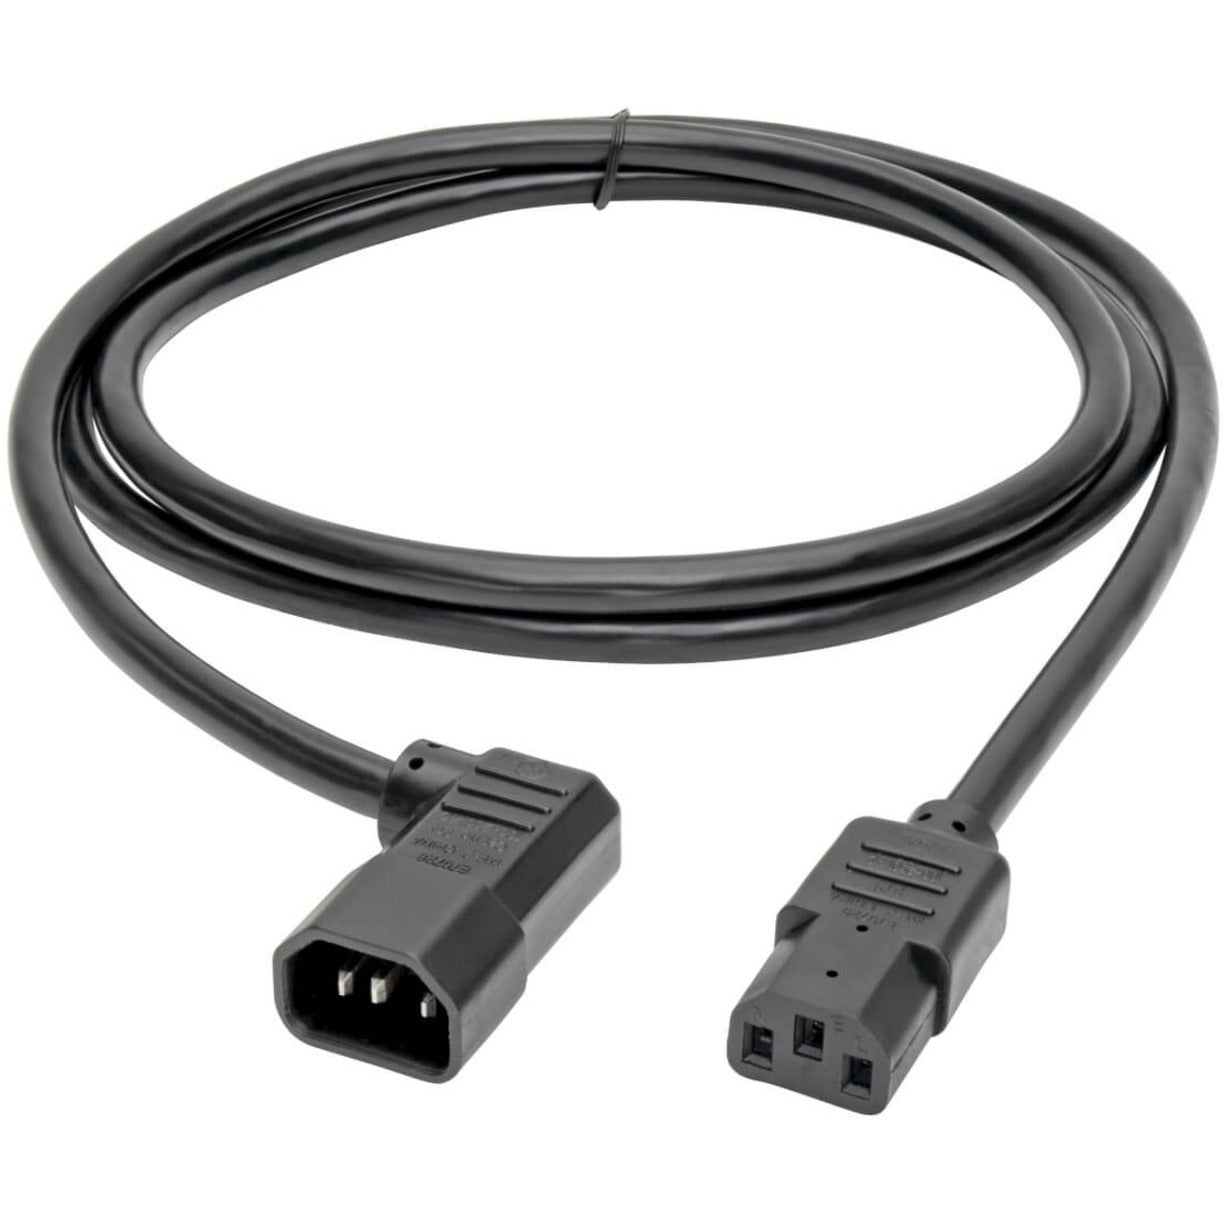 Marca: Tripp Lite Cable de alimentación pesado de 6 pies de calibre 14 AWG IEC-320-C13 a IEC-320-C14 de ángulo recto